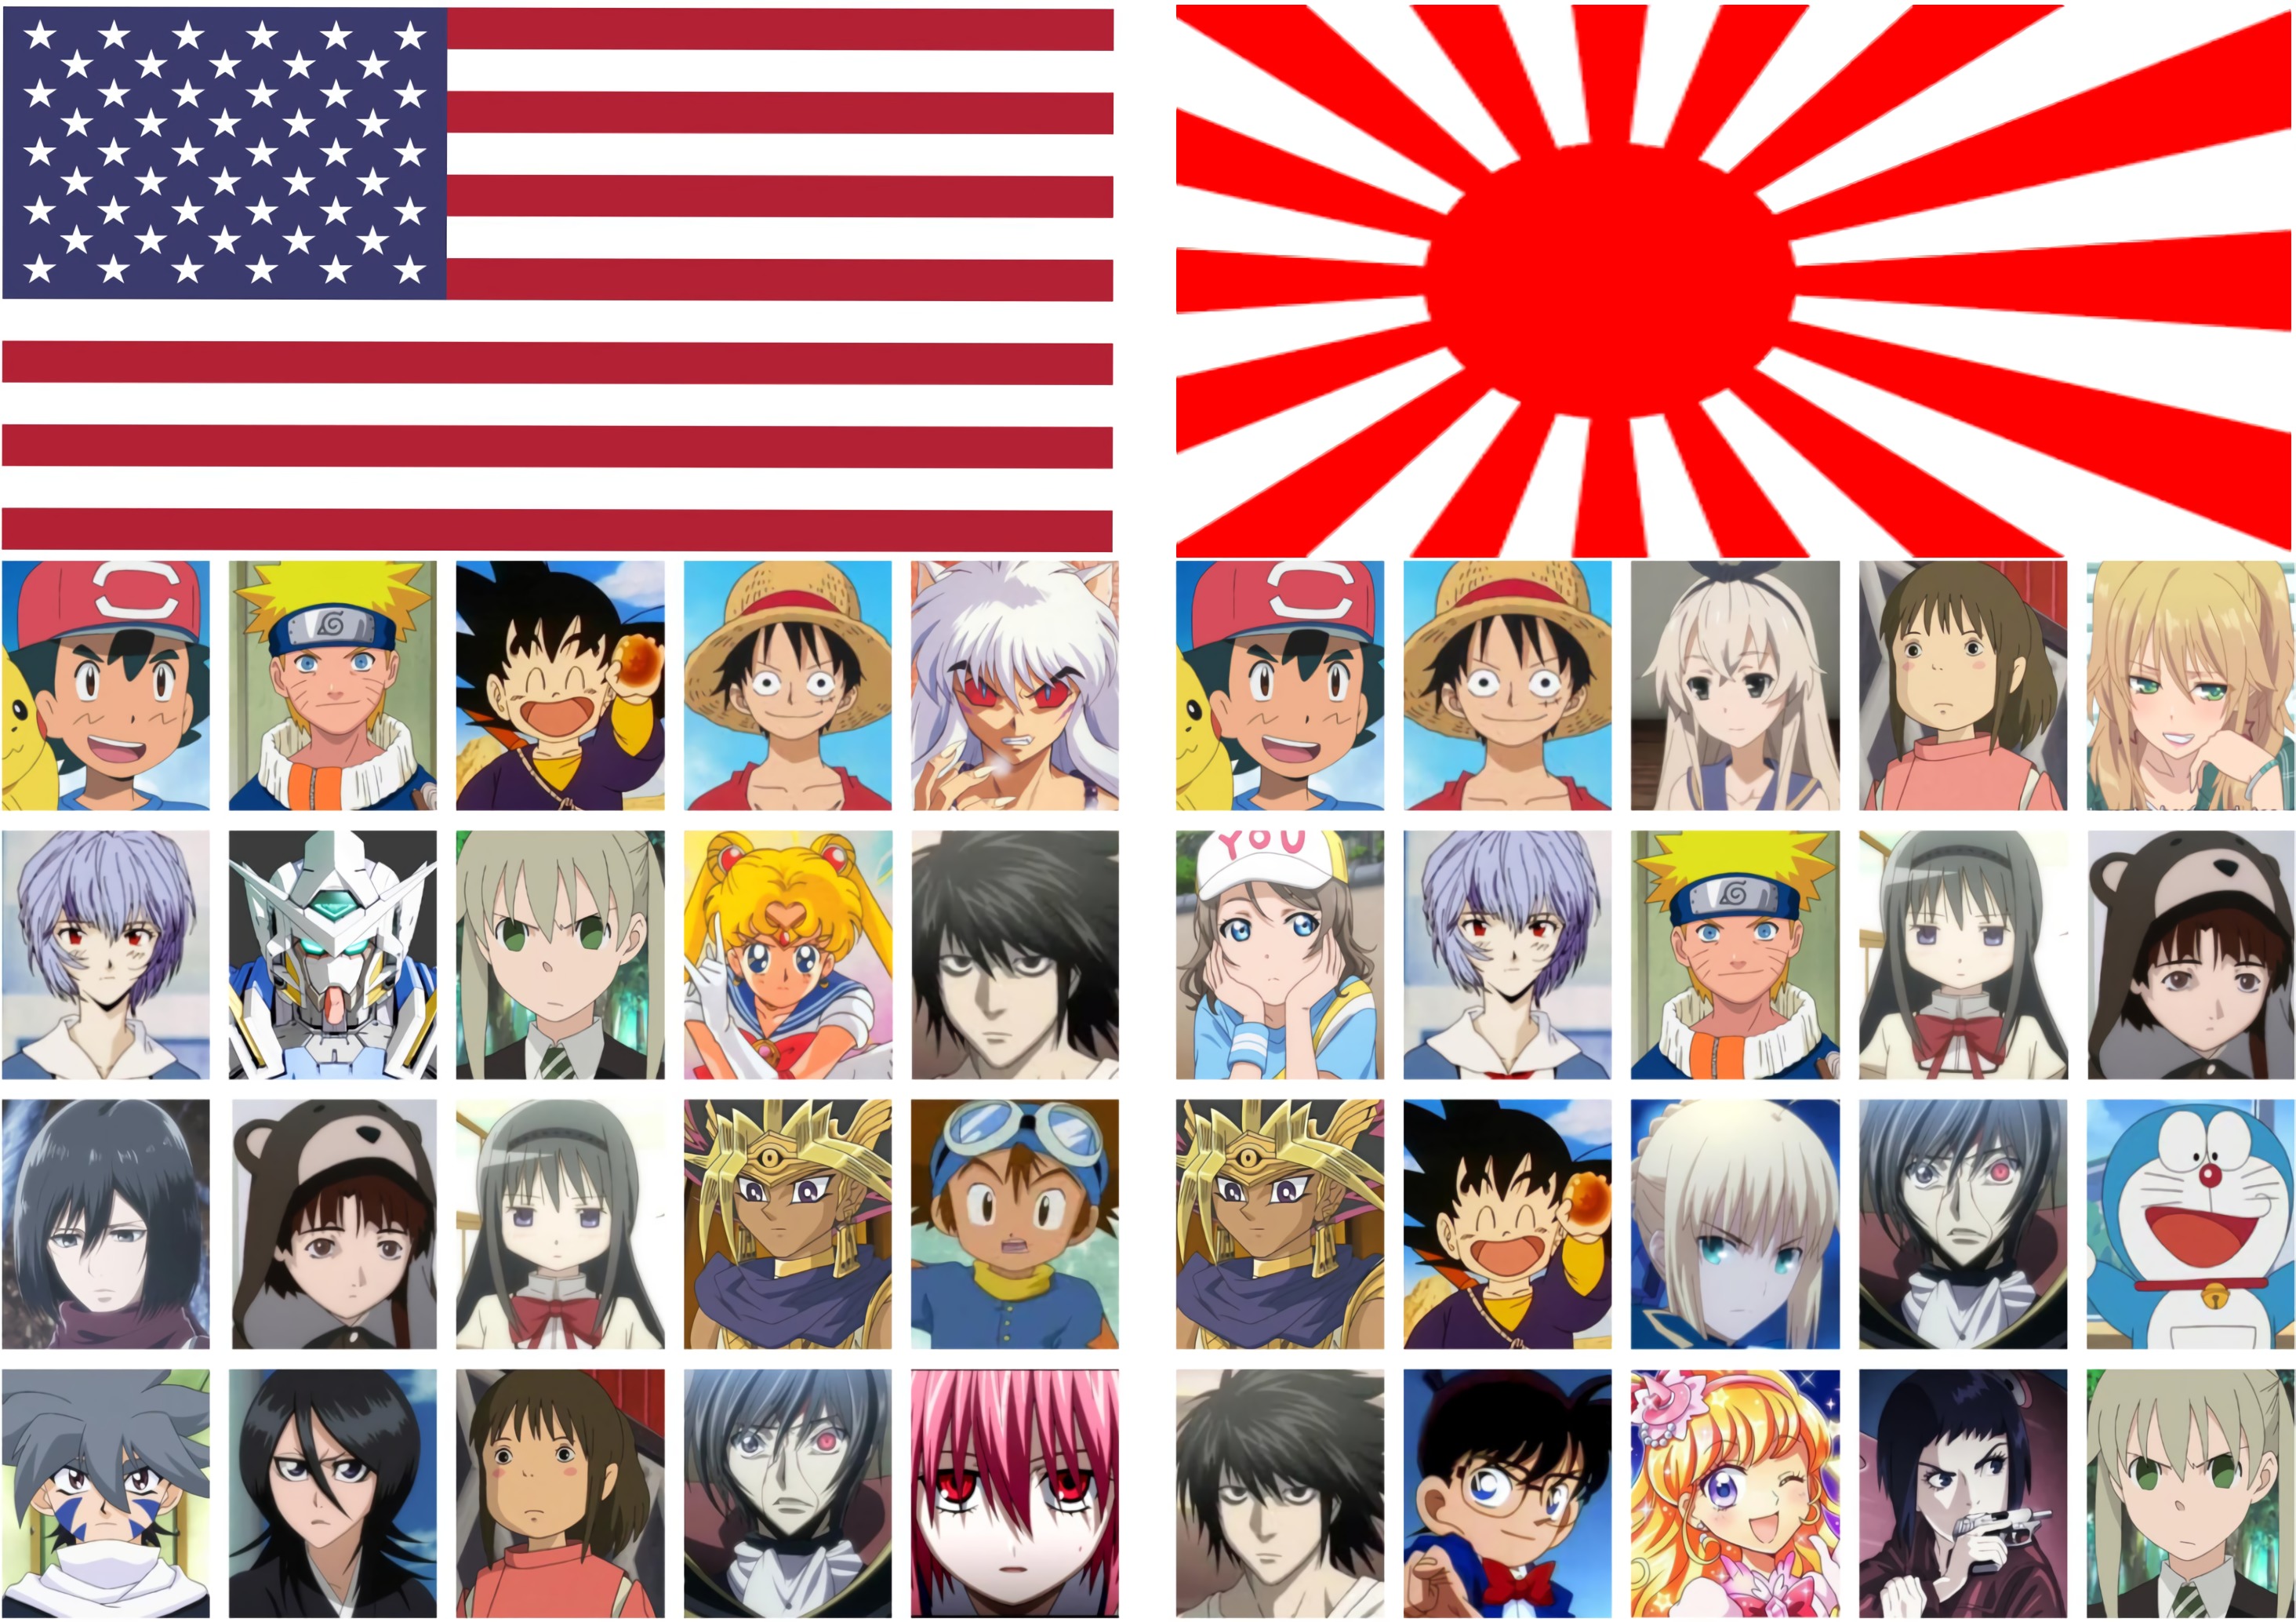 外国人 日本とアメリカの人気アニメ一覧 どっちがセンスある 海外の反応 まとめアンテナリーダー